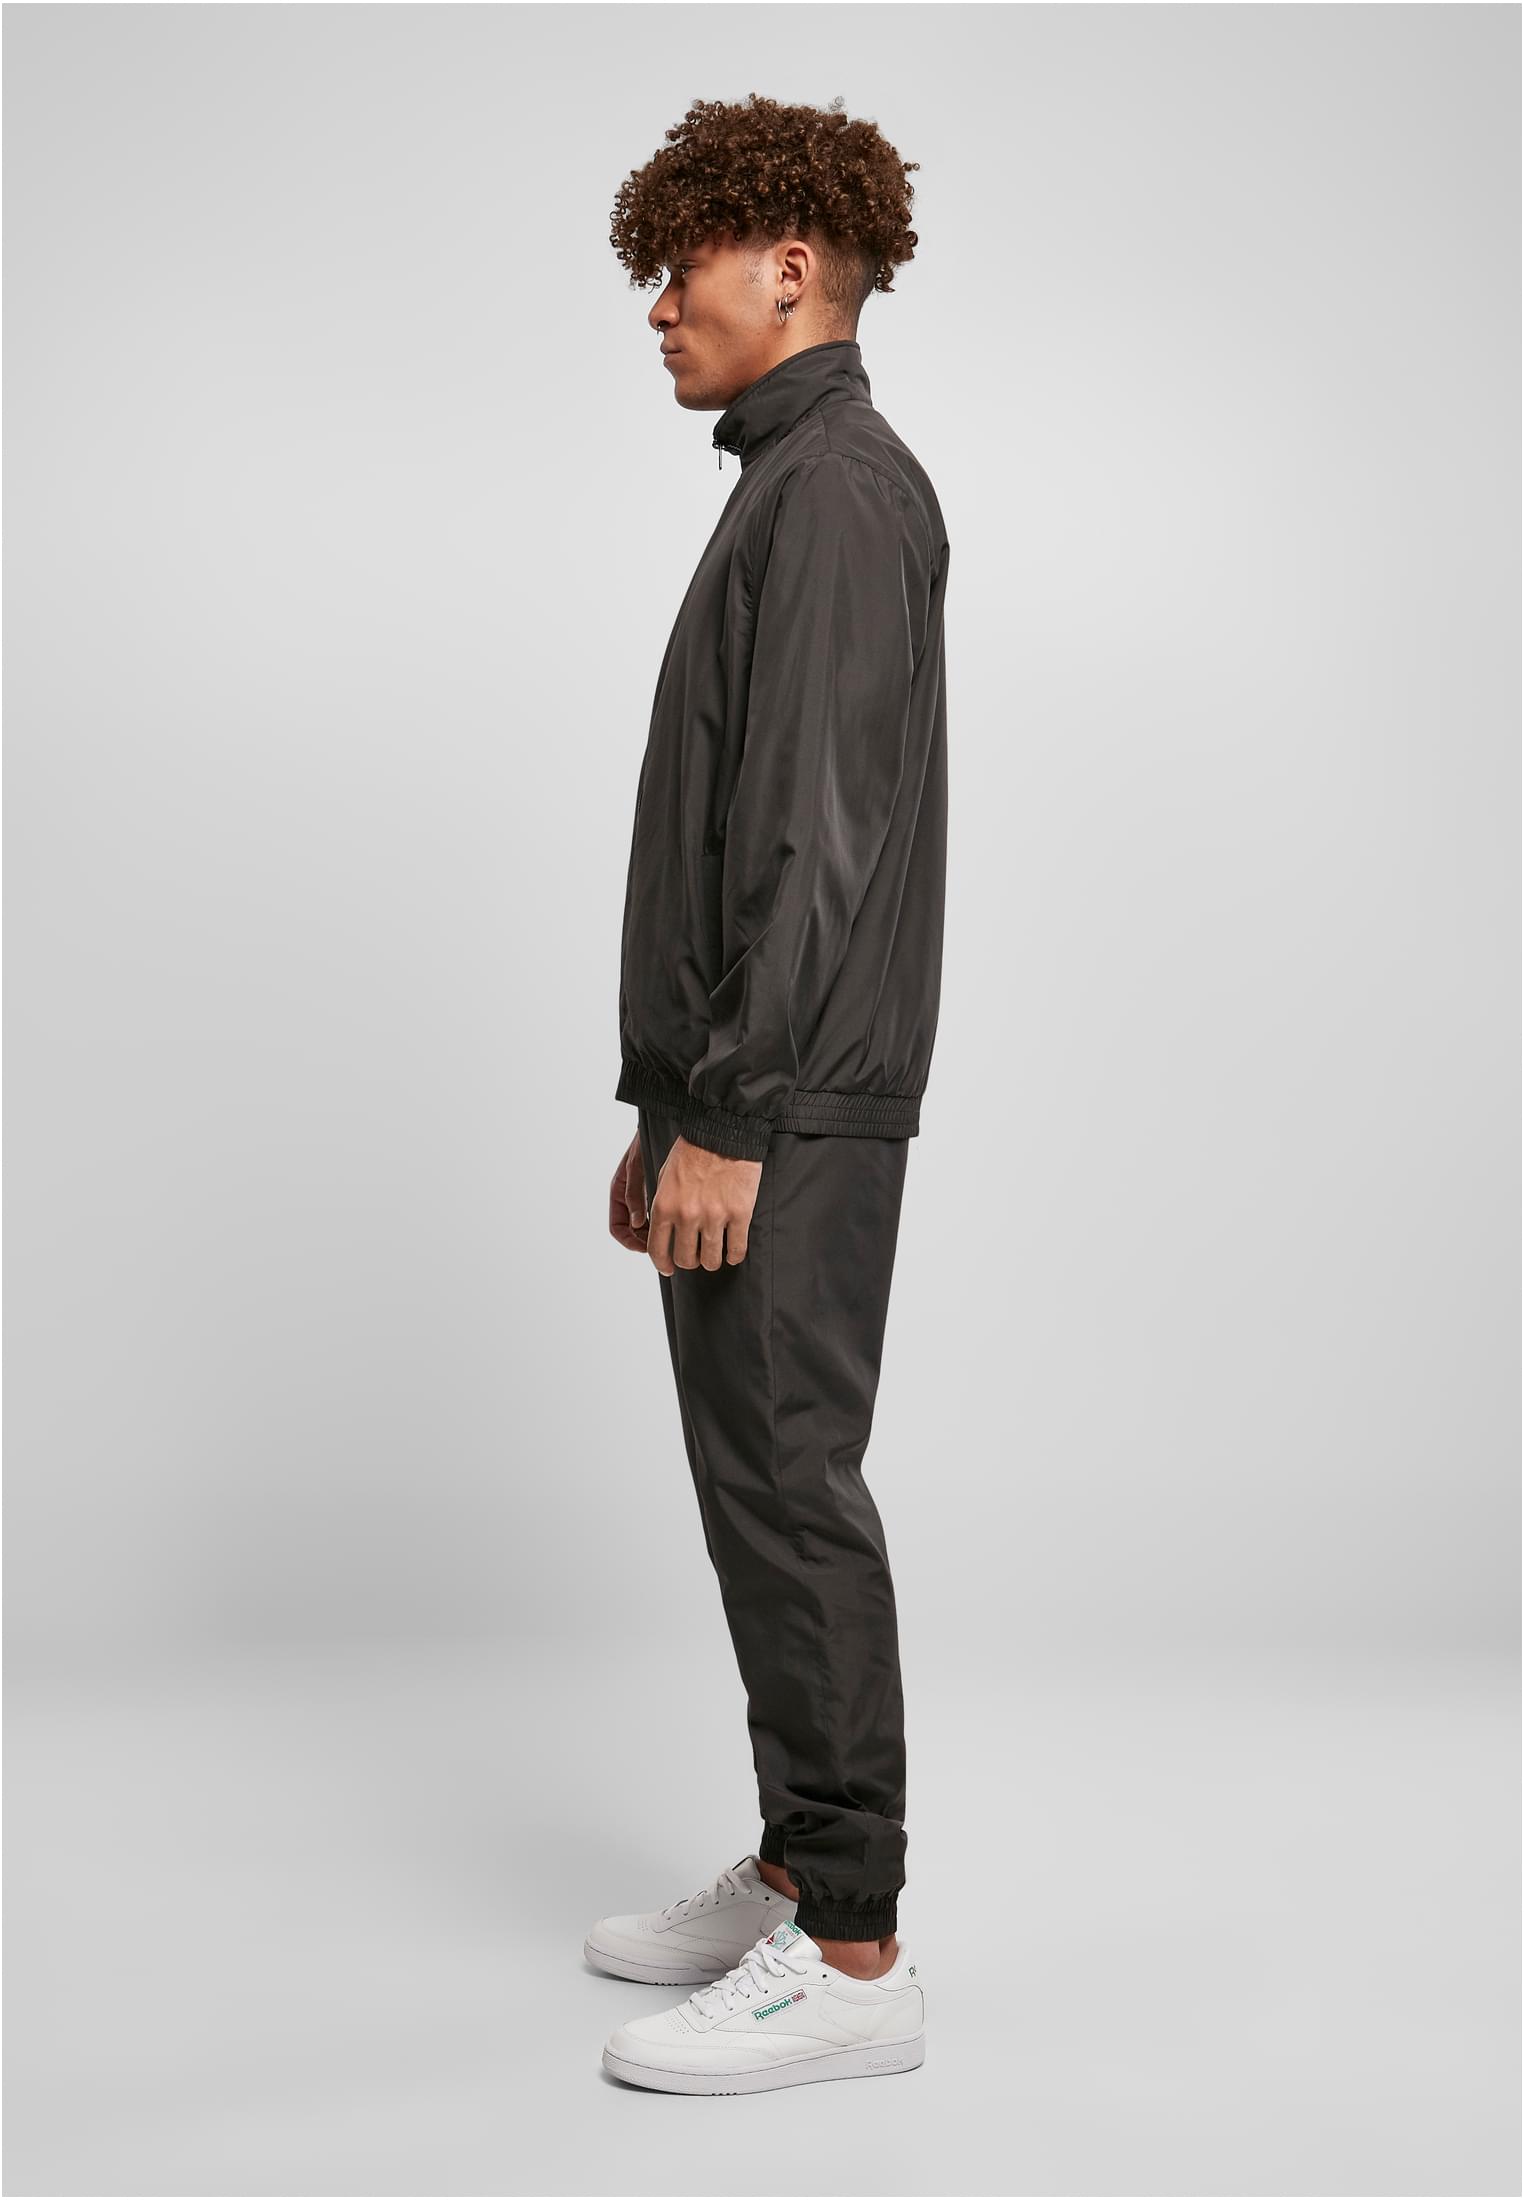 Hosen Basic Tracksuit in Farbe black